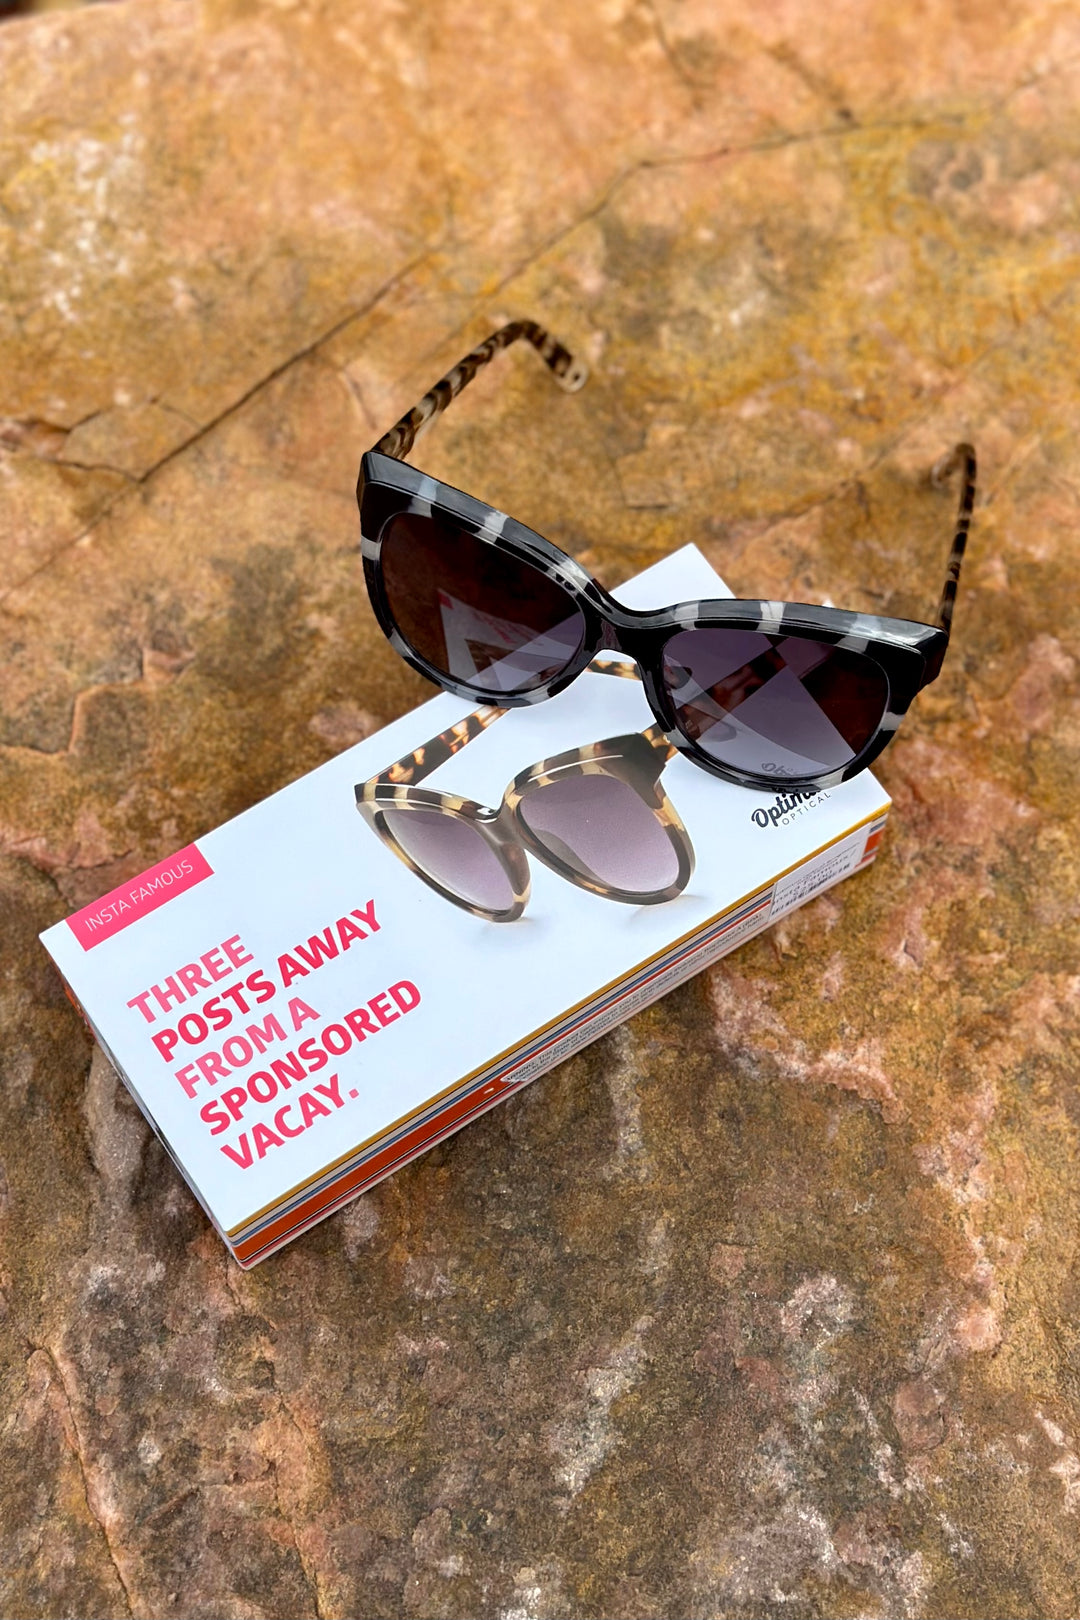 Optimum Optical Sunglasses - Insta Famous